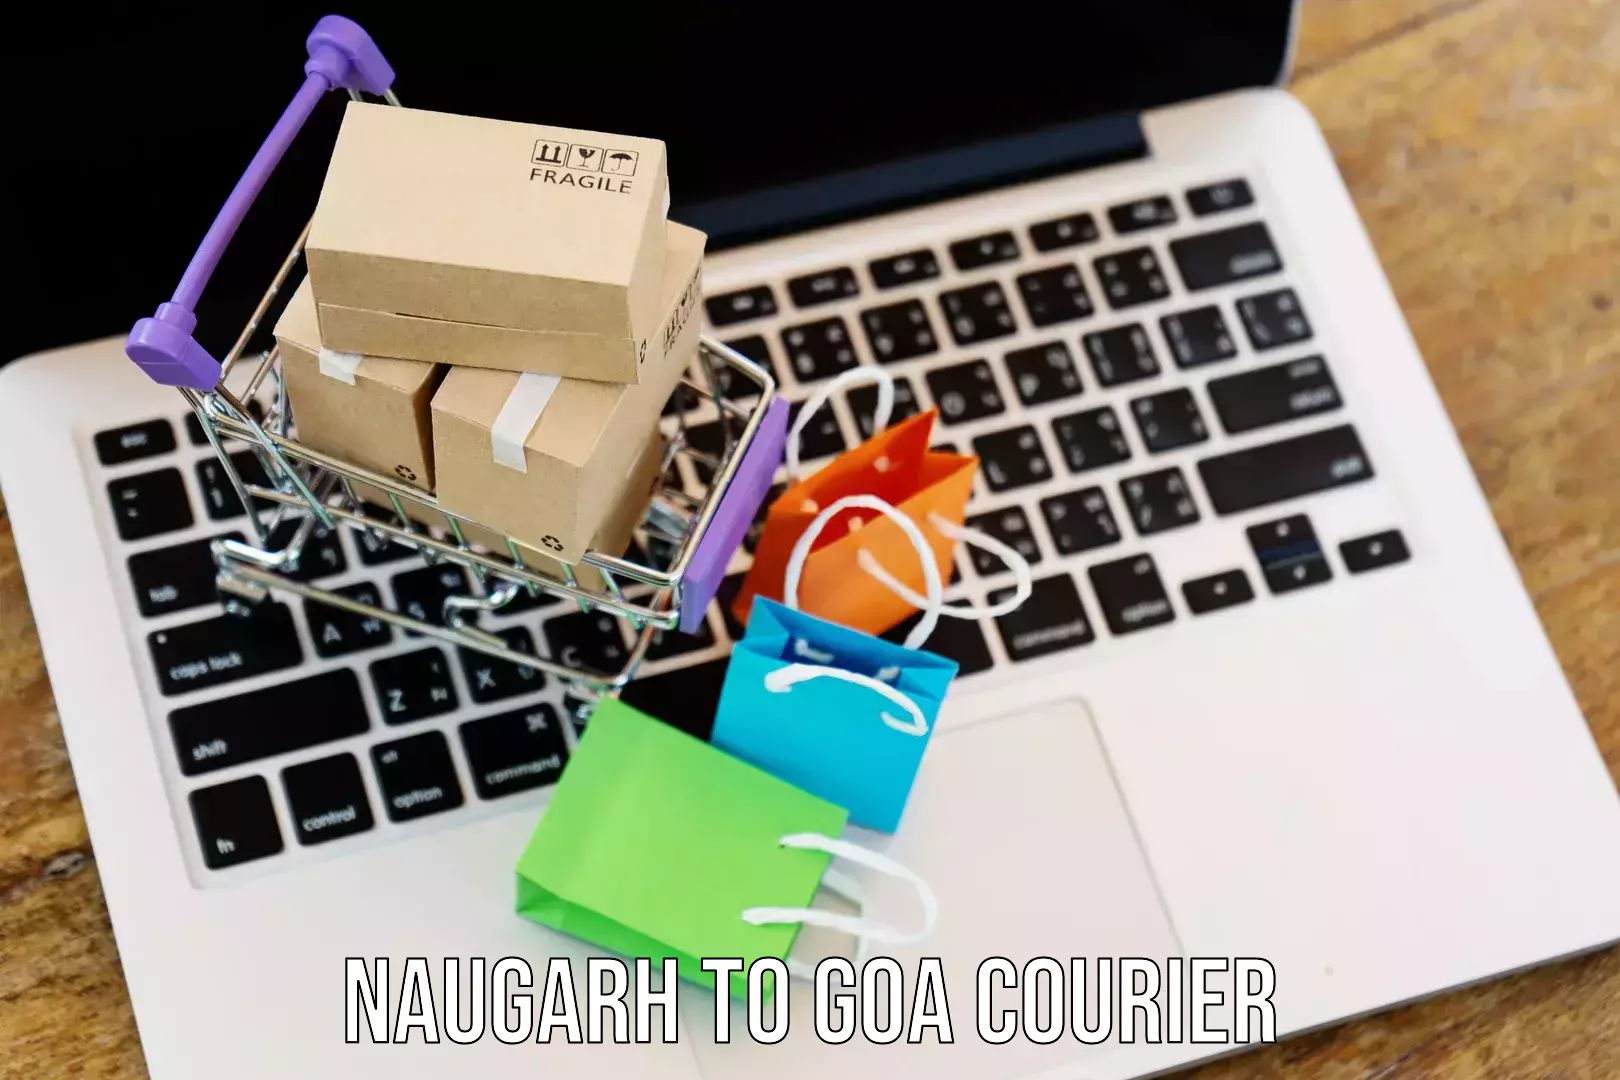 Tracking updates in Naugarh to IIT Goa